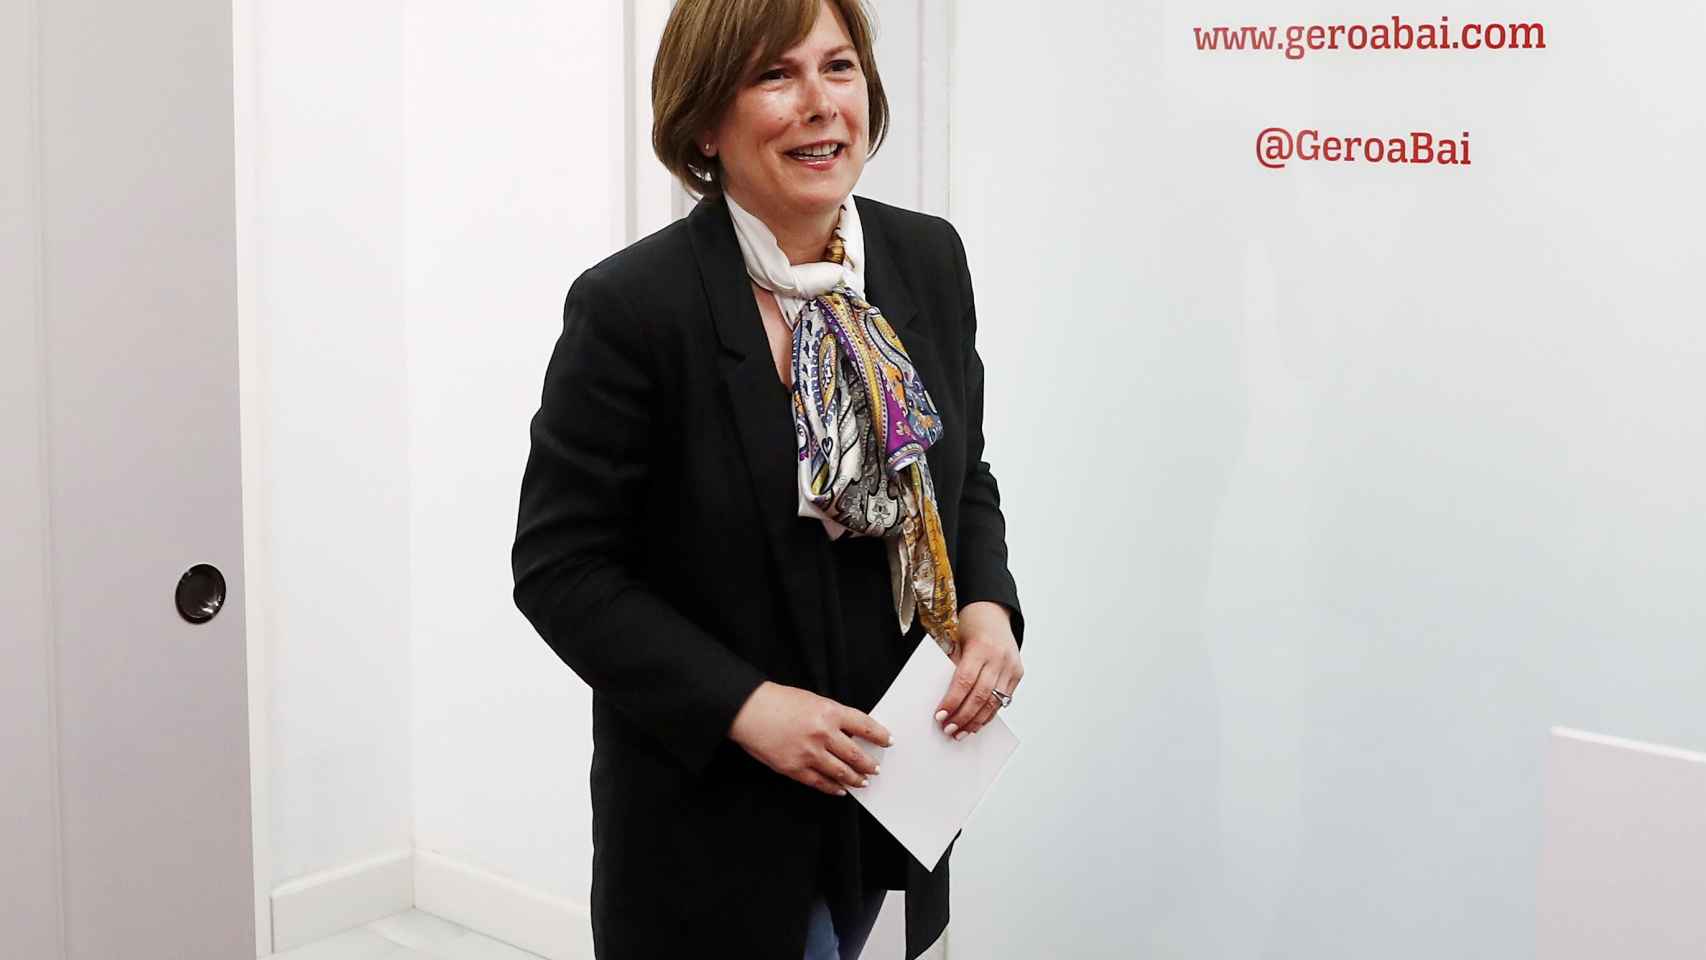 La presidenta del Gobierno de Navarra en funciones, Uxue Barkos, este jueves.